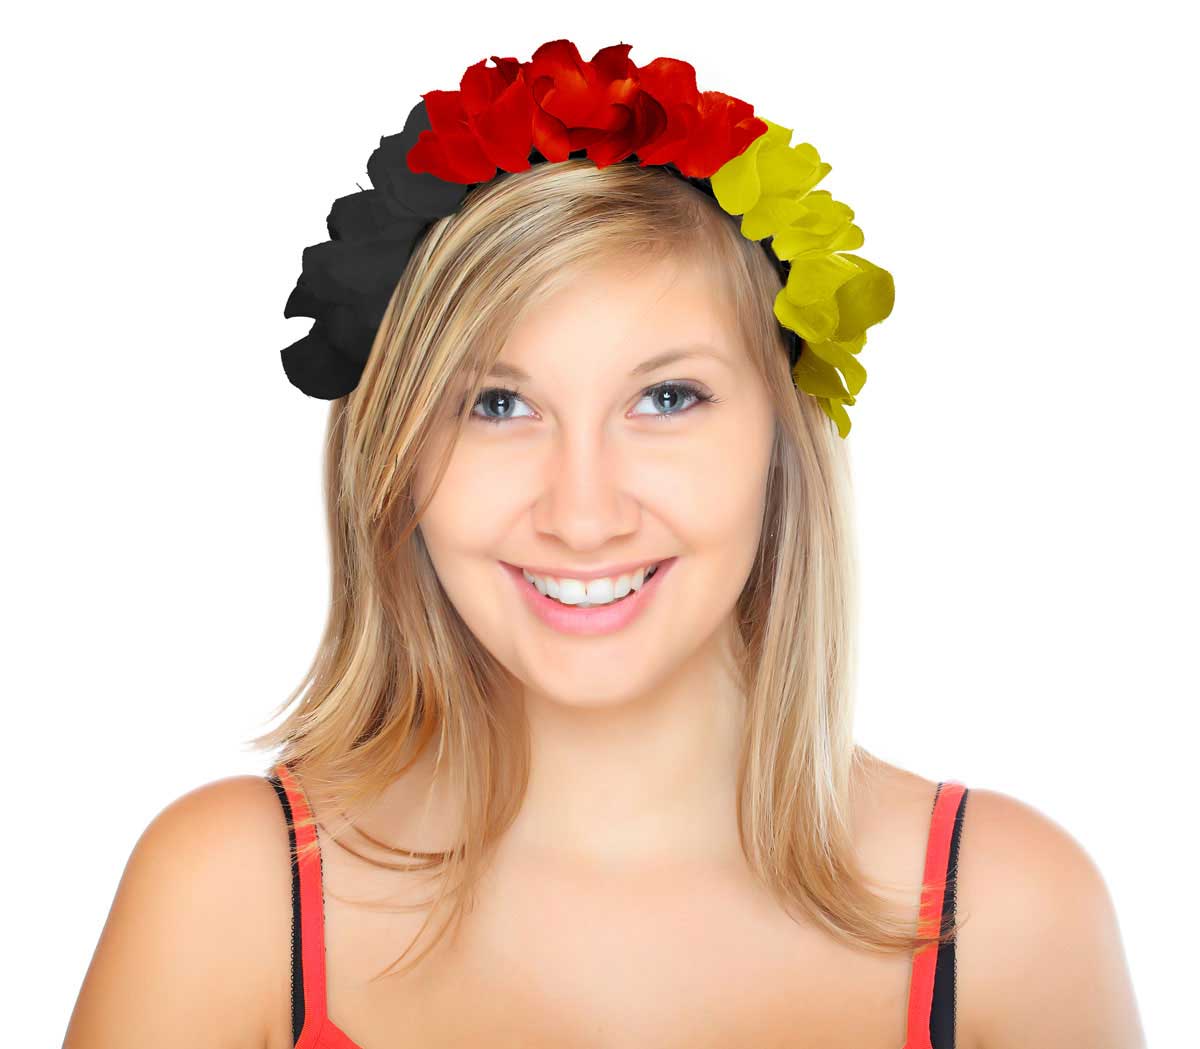 Tiara Hawaii Zwart-Rood-Geel Duitsland